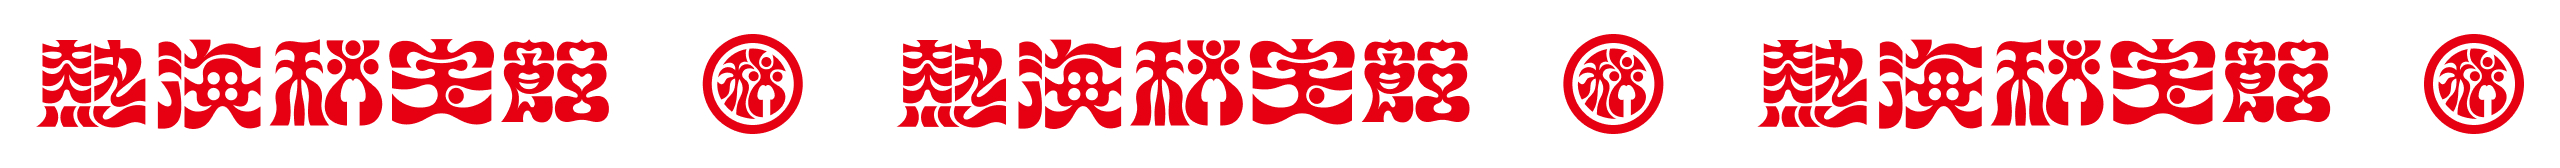 熱海秘宝館のロゴ